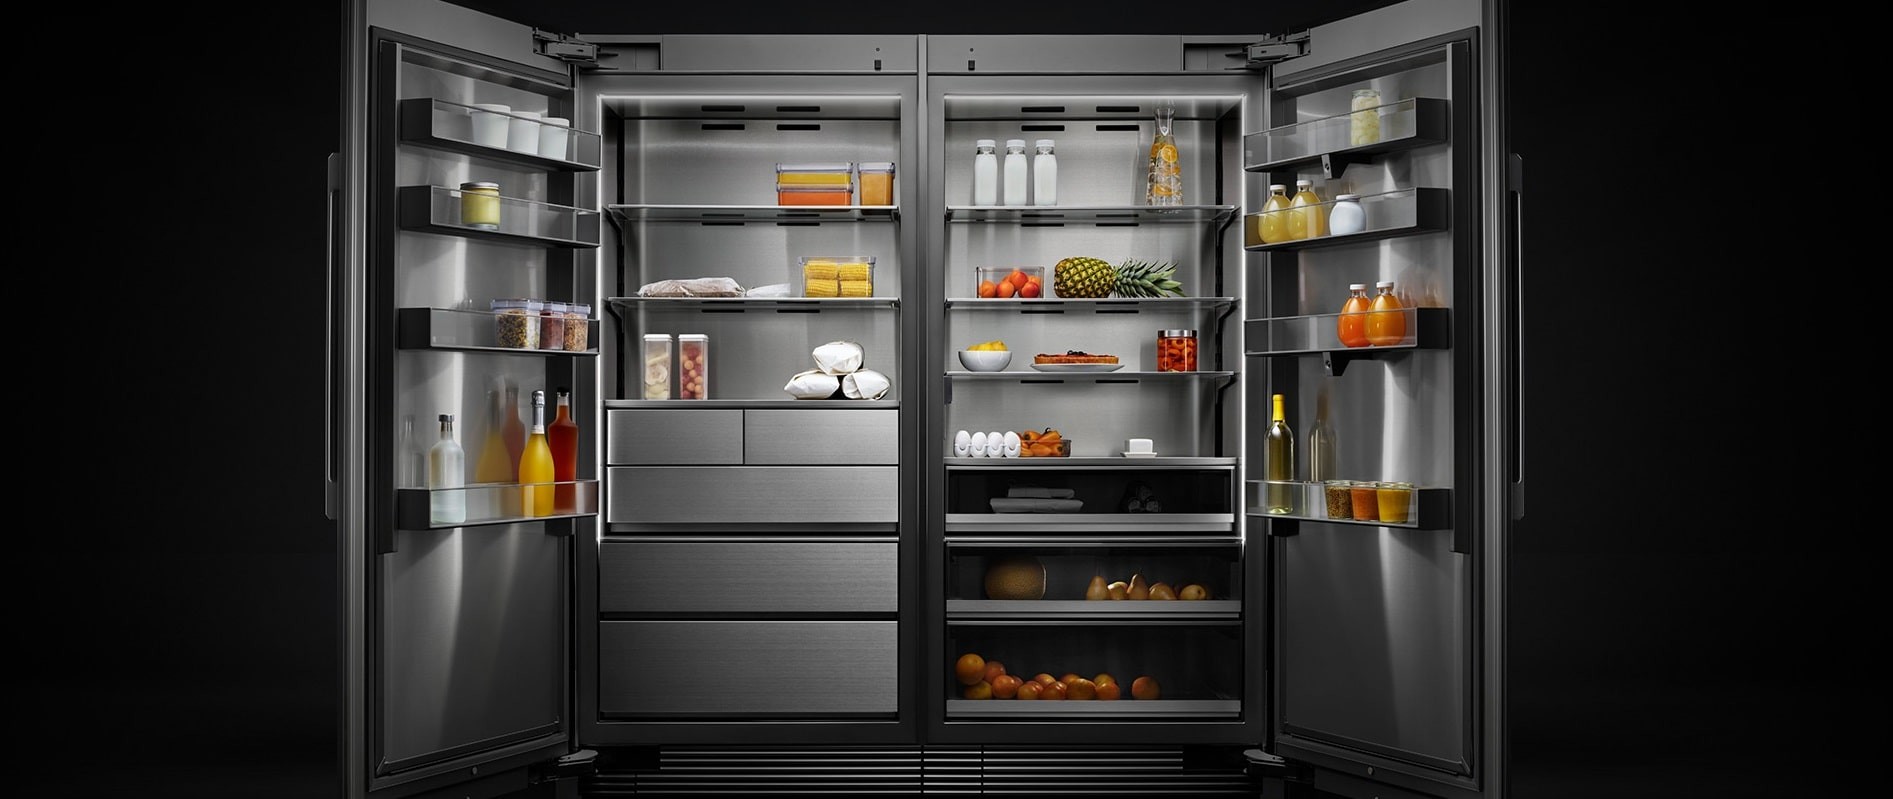 Какой холодильник лучше двухкамерный или однокамерный?